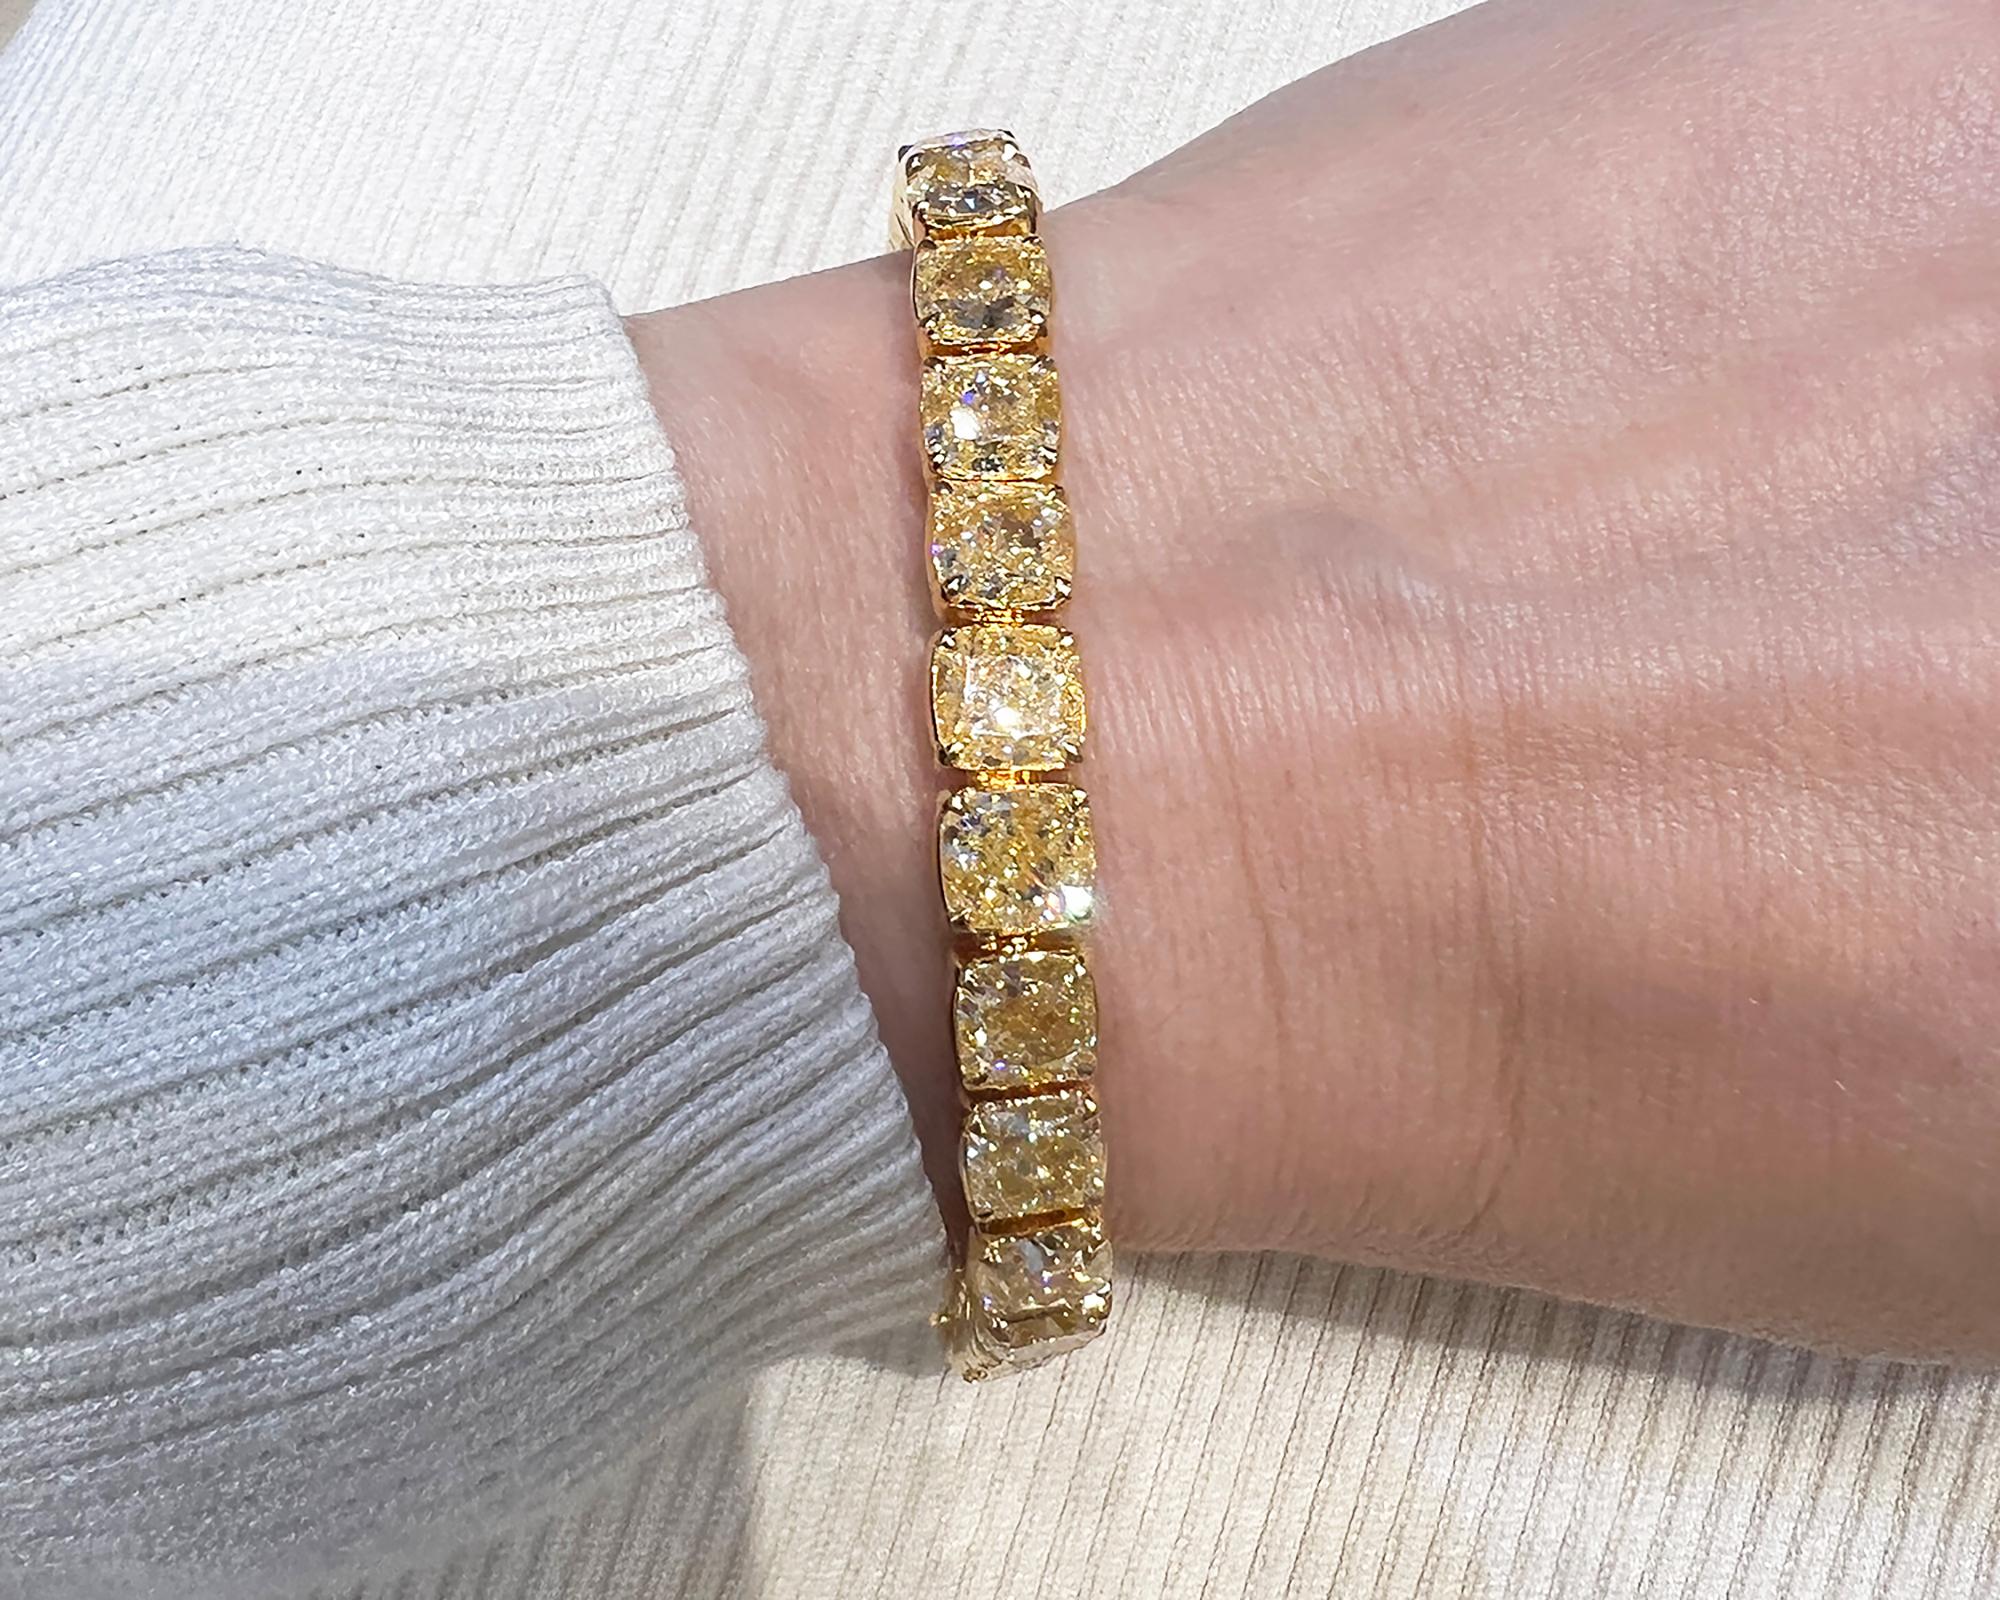 Erleben Sie die Pracht des Spectra Fine Jewelry's Exquisite 32,83-Karat Cushion Yellow Diamond Tennis Bracelet - ein wahres Kunstwerk. Dieses bemerkenswerte Armband rühmt sich mit 29 sorgfältig ausgewählten Diamanten, von denen jeder für seine